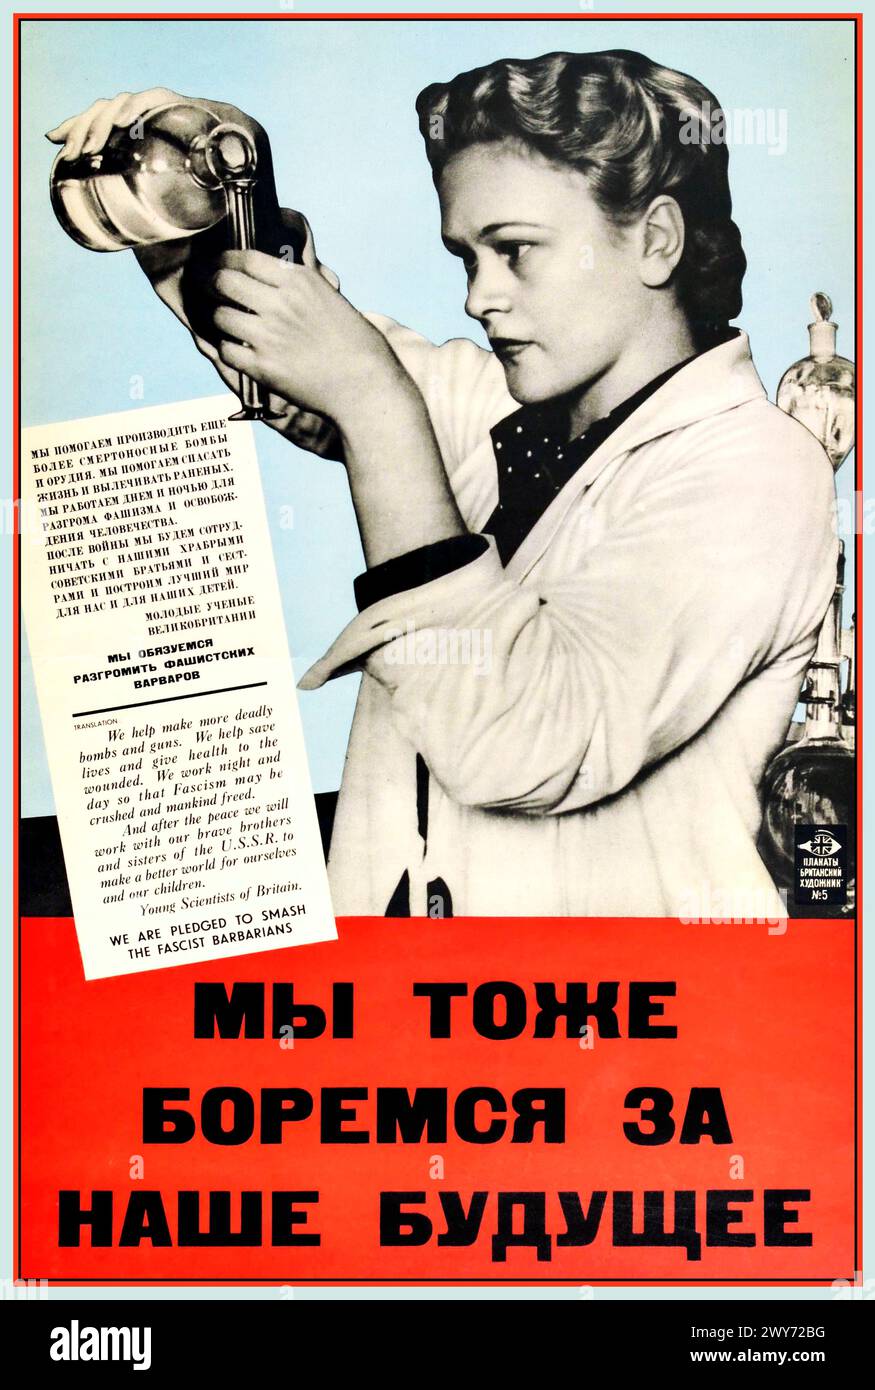 2. Weltkrieg 1940er Jahre Propaganda zweisprachiges Poster zur Unterstützung der UdSSR durch junge britische Wissenschaftler. "WIR SIND VERPFLICHTET, DIE FACIST BARABARIANS ZU ZERSCHLAGEN", mit der Überschrift "Wir kämpfen auch für unsere Zukunft" Stockfoto